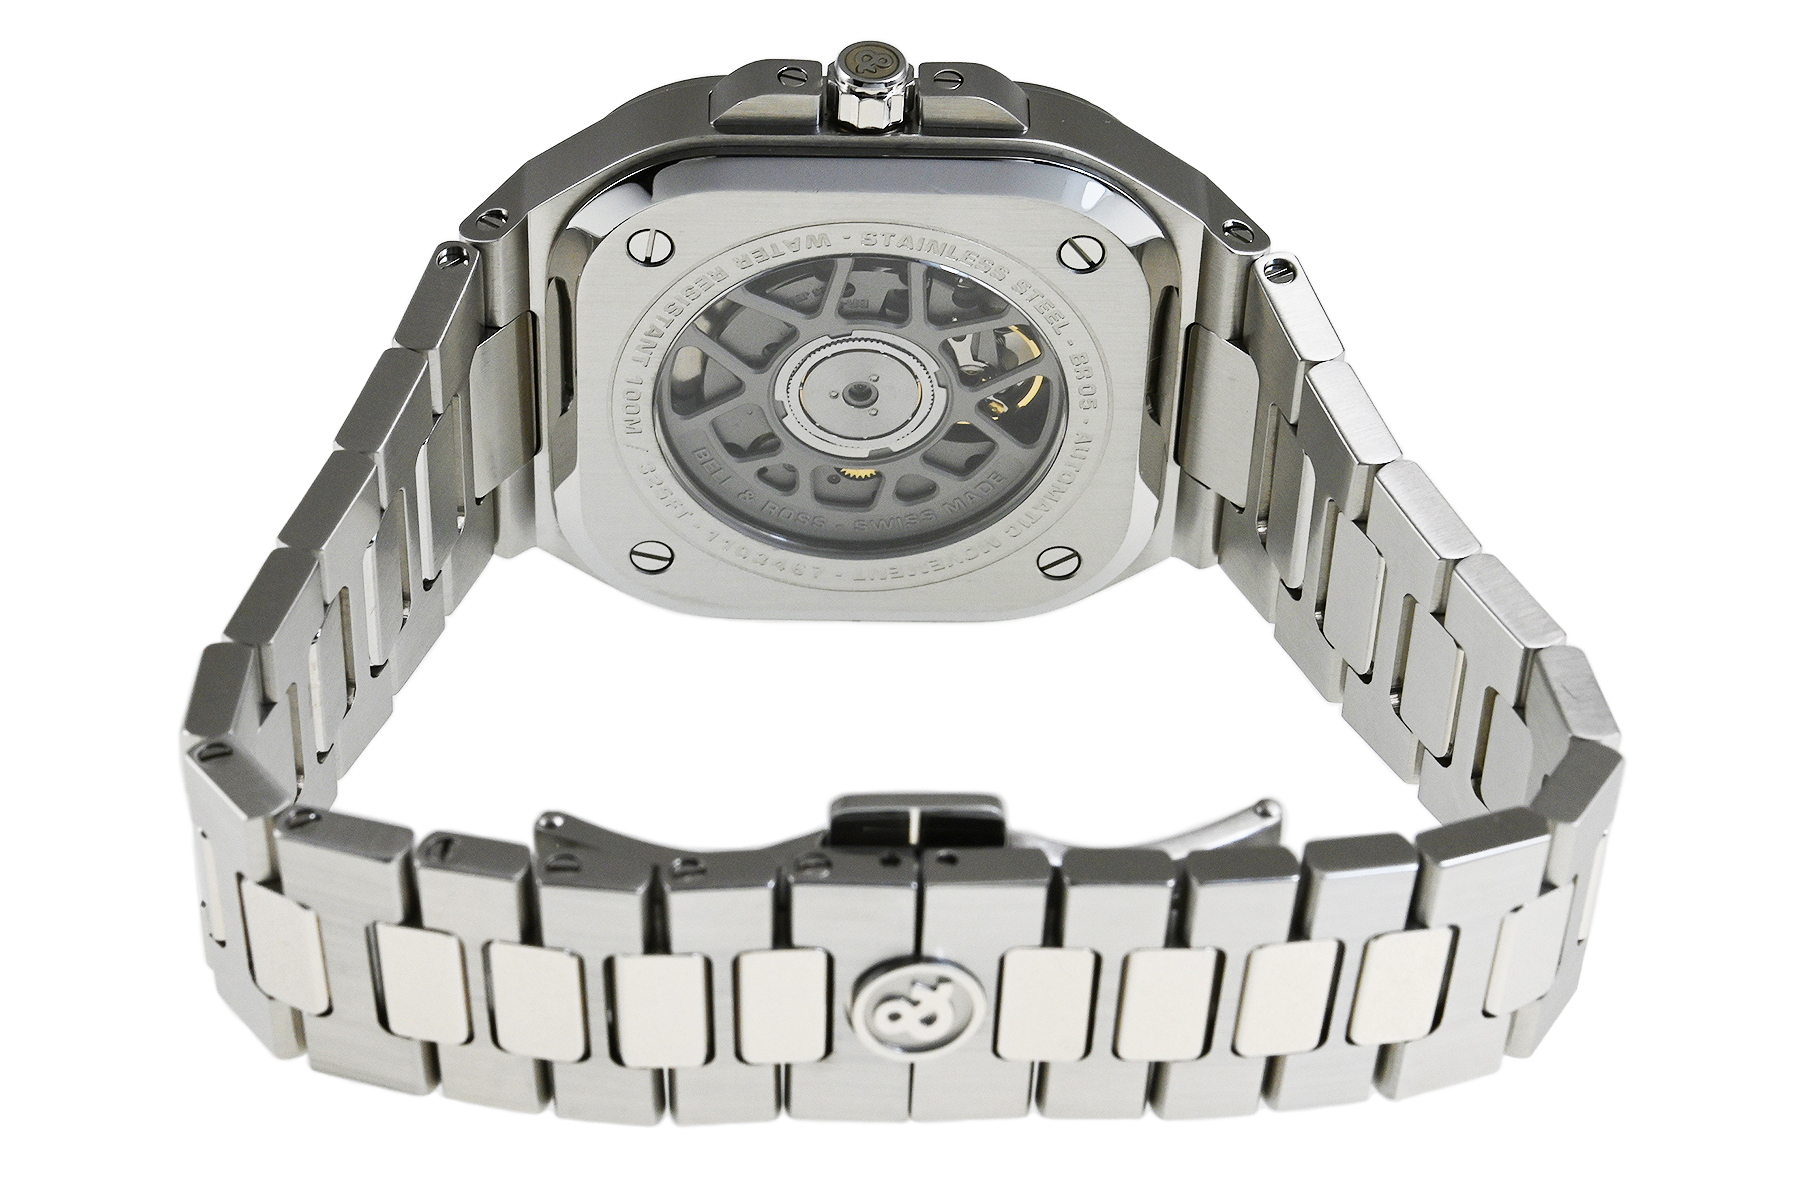 ベル＆ロス Bell & Ross インストゥルメント BR05　ブラックスチール BR05A-BL-ST/SST SS メンズ 腕時計